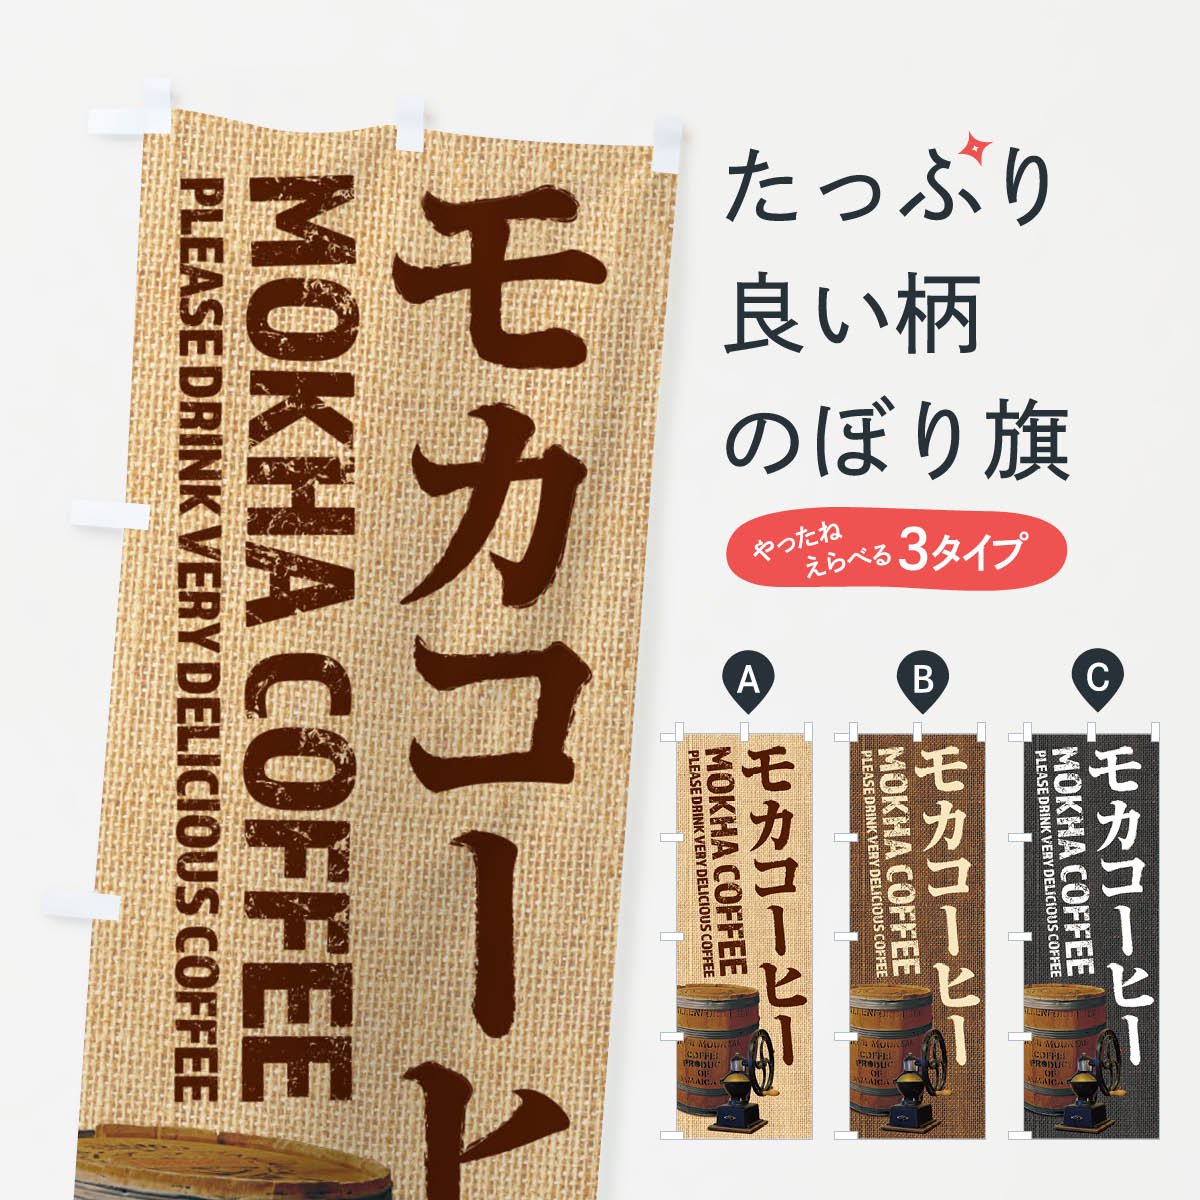 Rのぼり旗 3枚セット COFFEE コーヒー No.3062 - 店舗用品